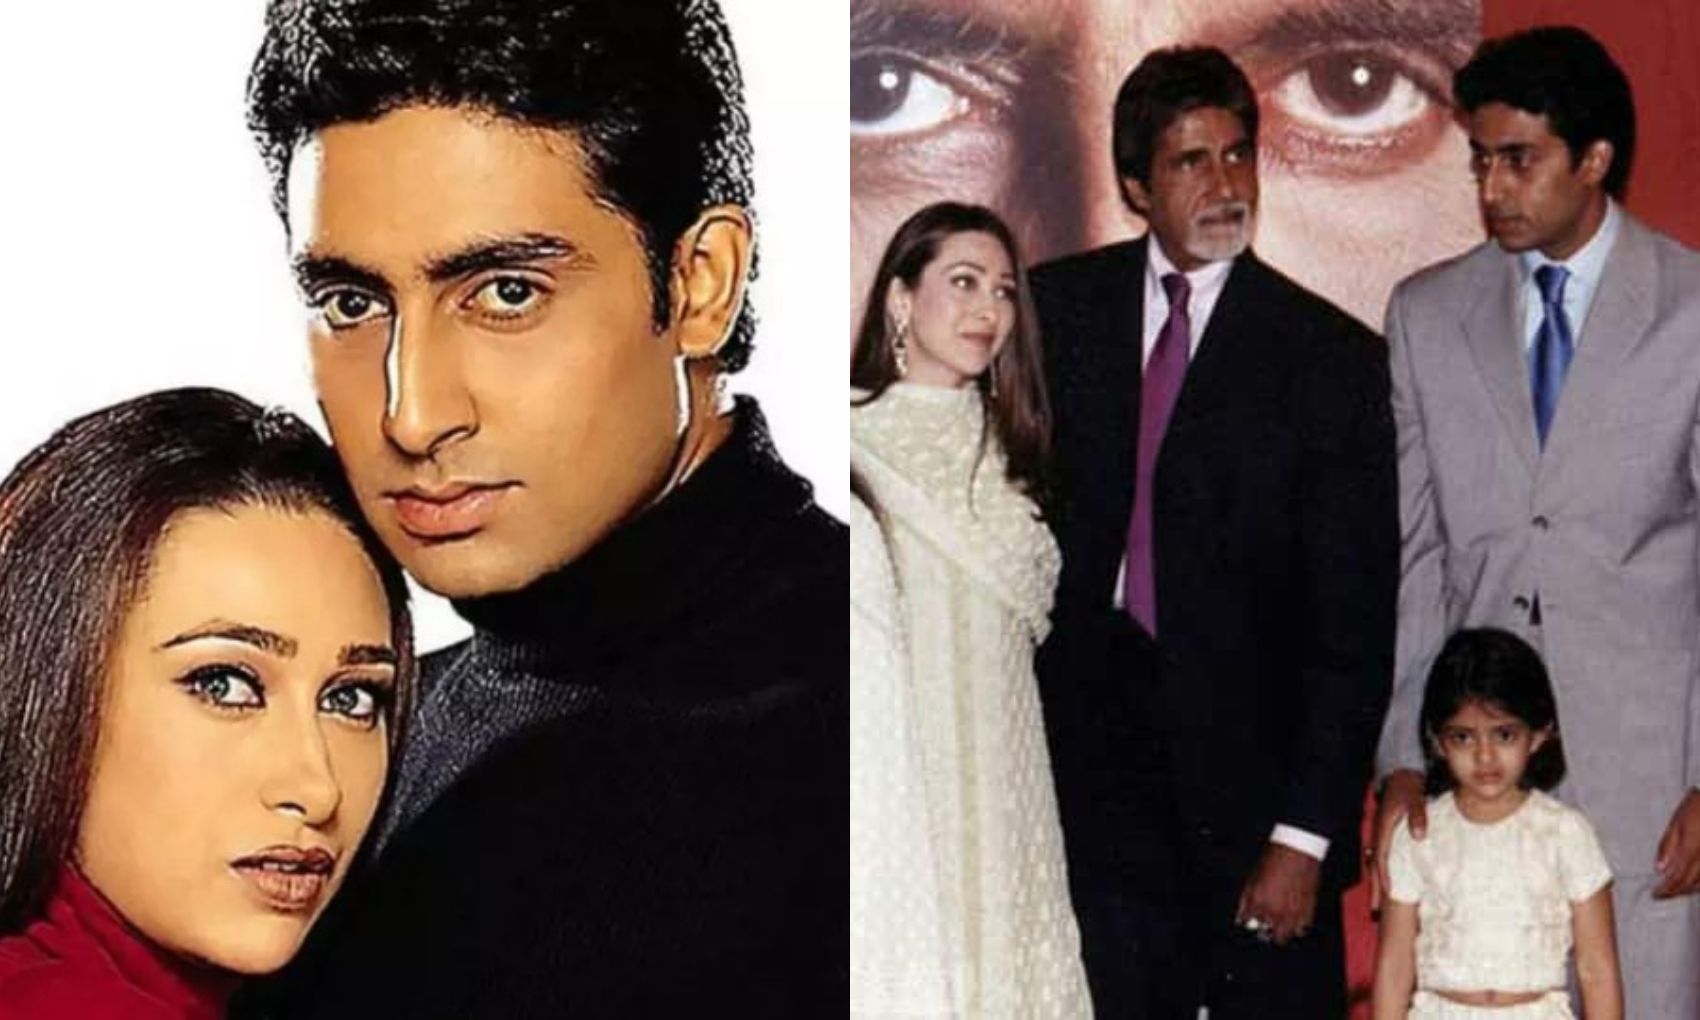 Flashback Friday: अभिषेक बच्चन और करिश्मा कपूर 5 साल तक रिश्ते में रहे, एक शर्त ने रिश्ते को पलभर में तोड़ दिया